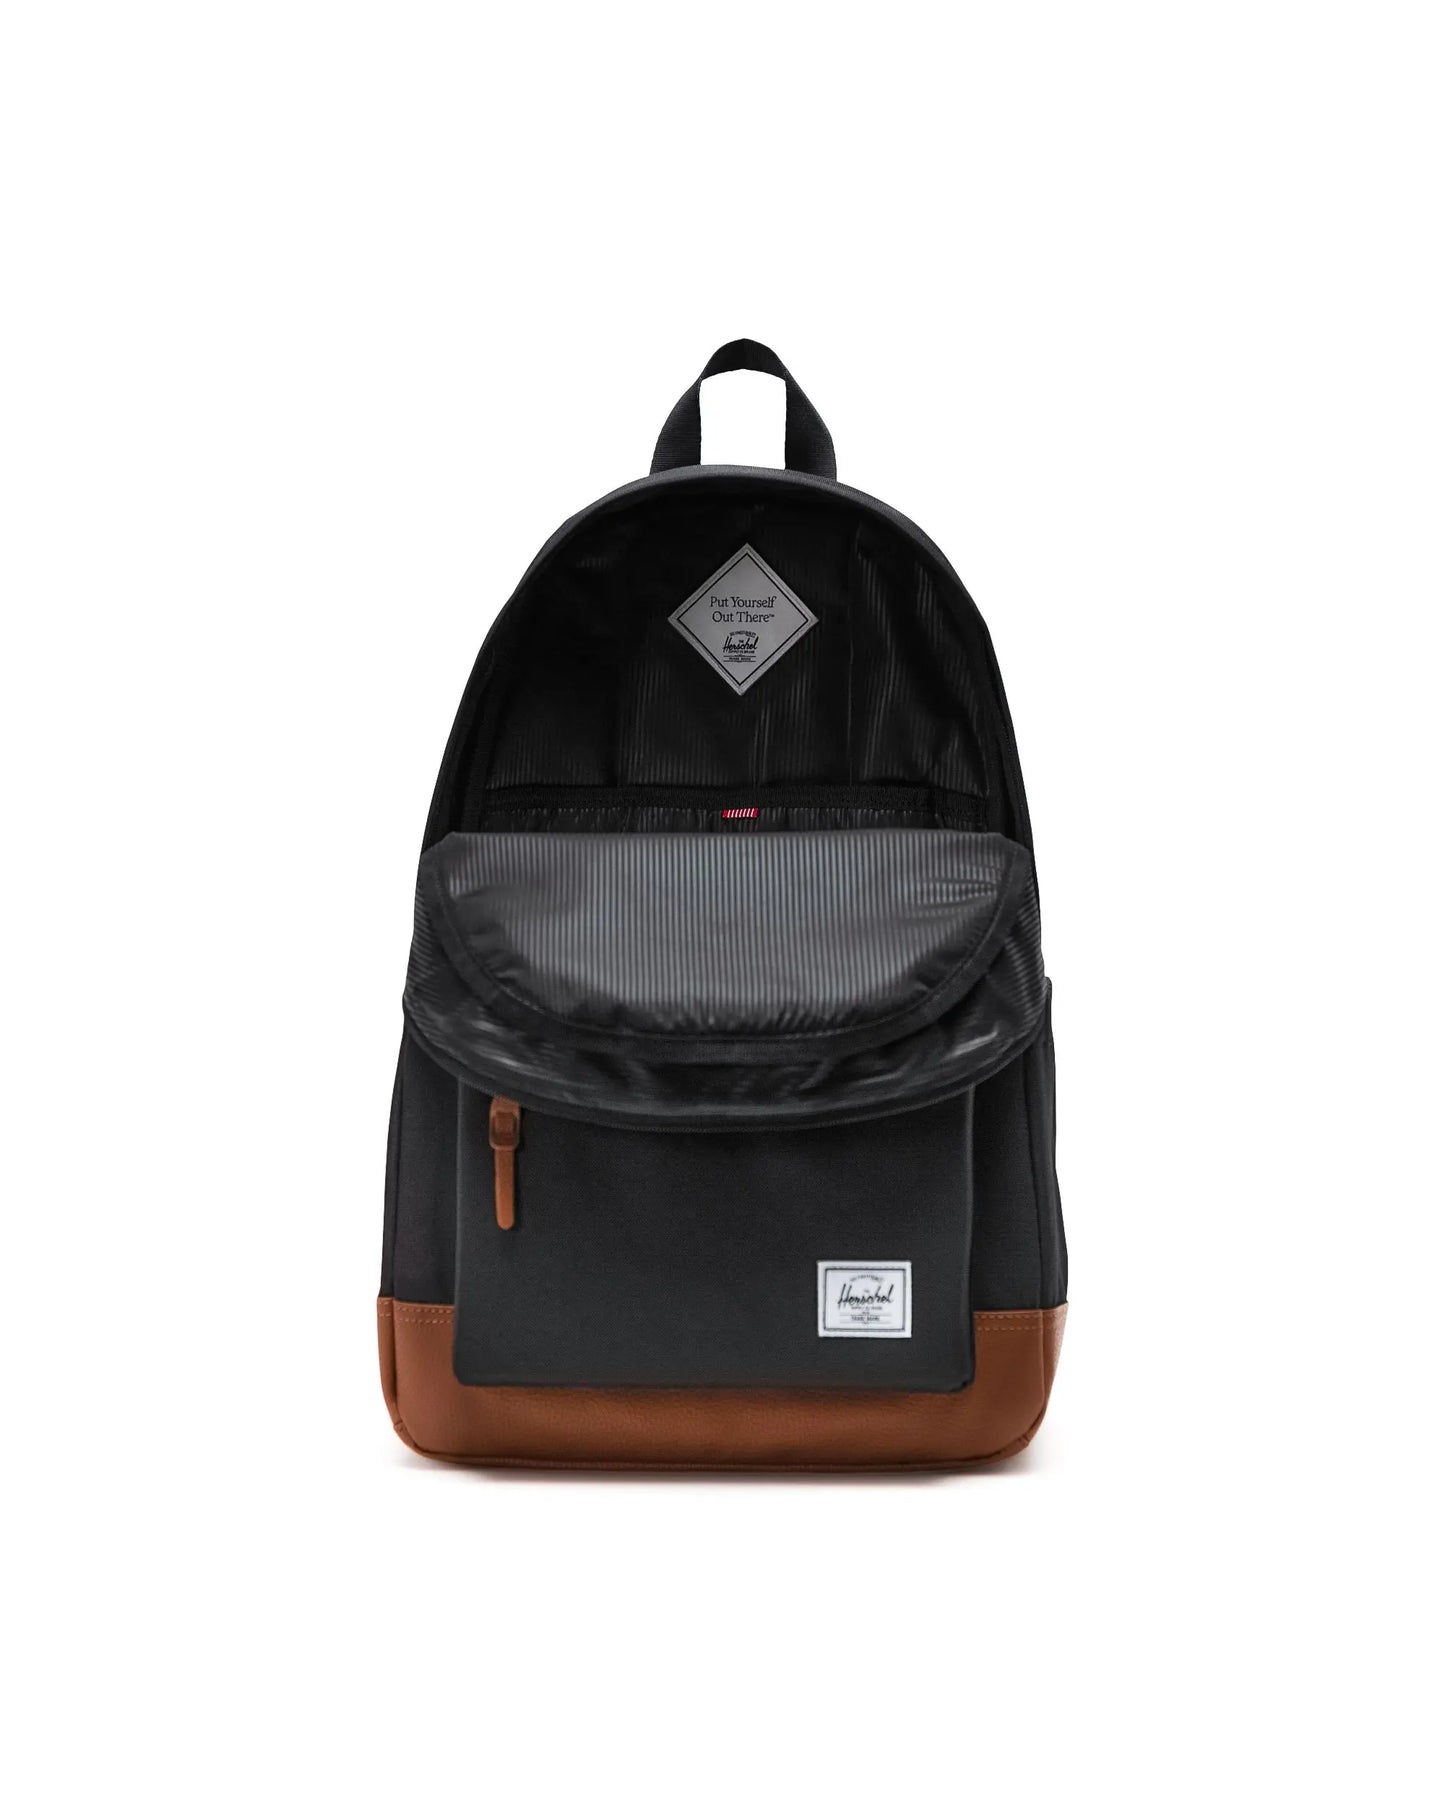 Herschel Heritage Backpack - Black/Tan